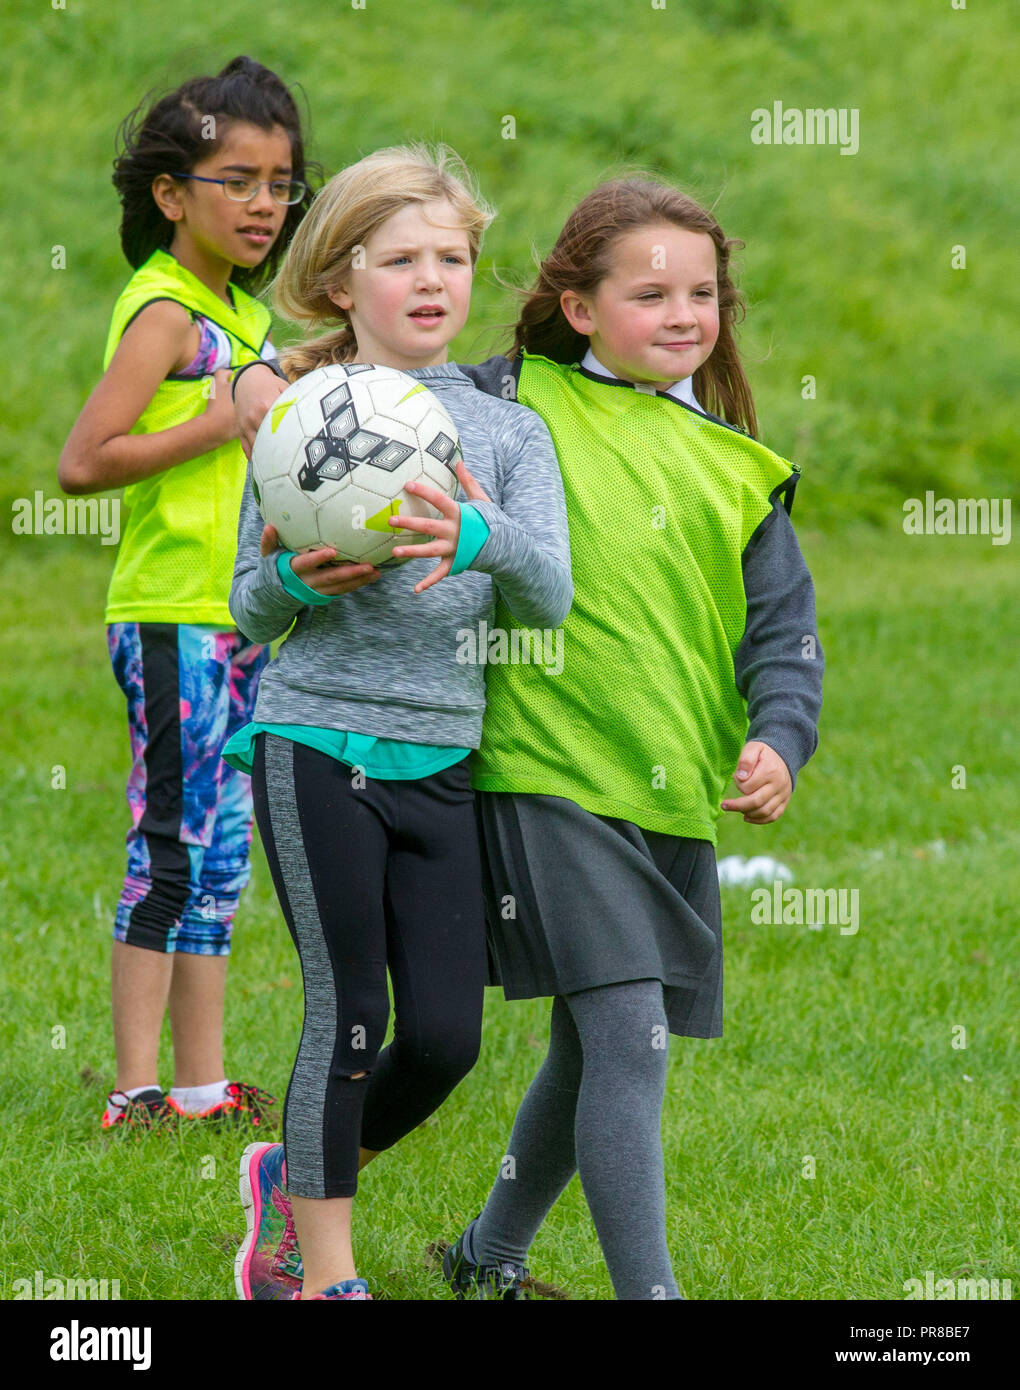 Kinder spielen mit Fußball Stockfoto